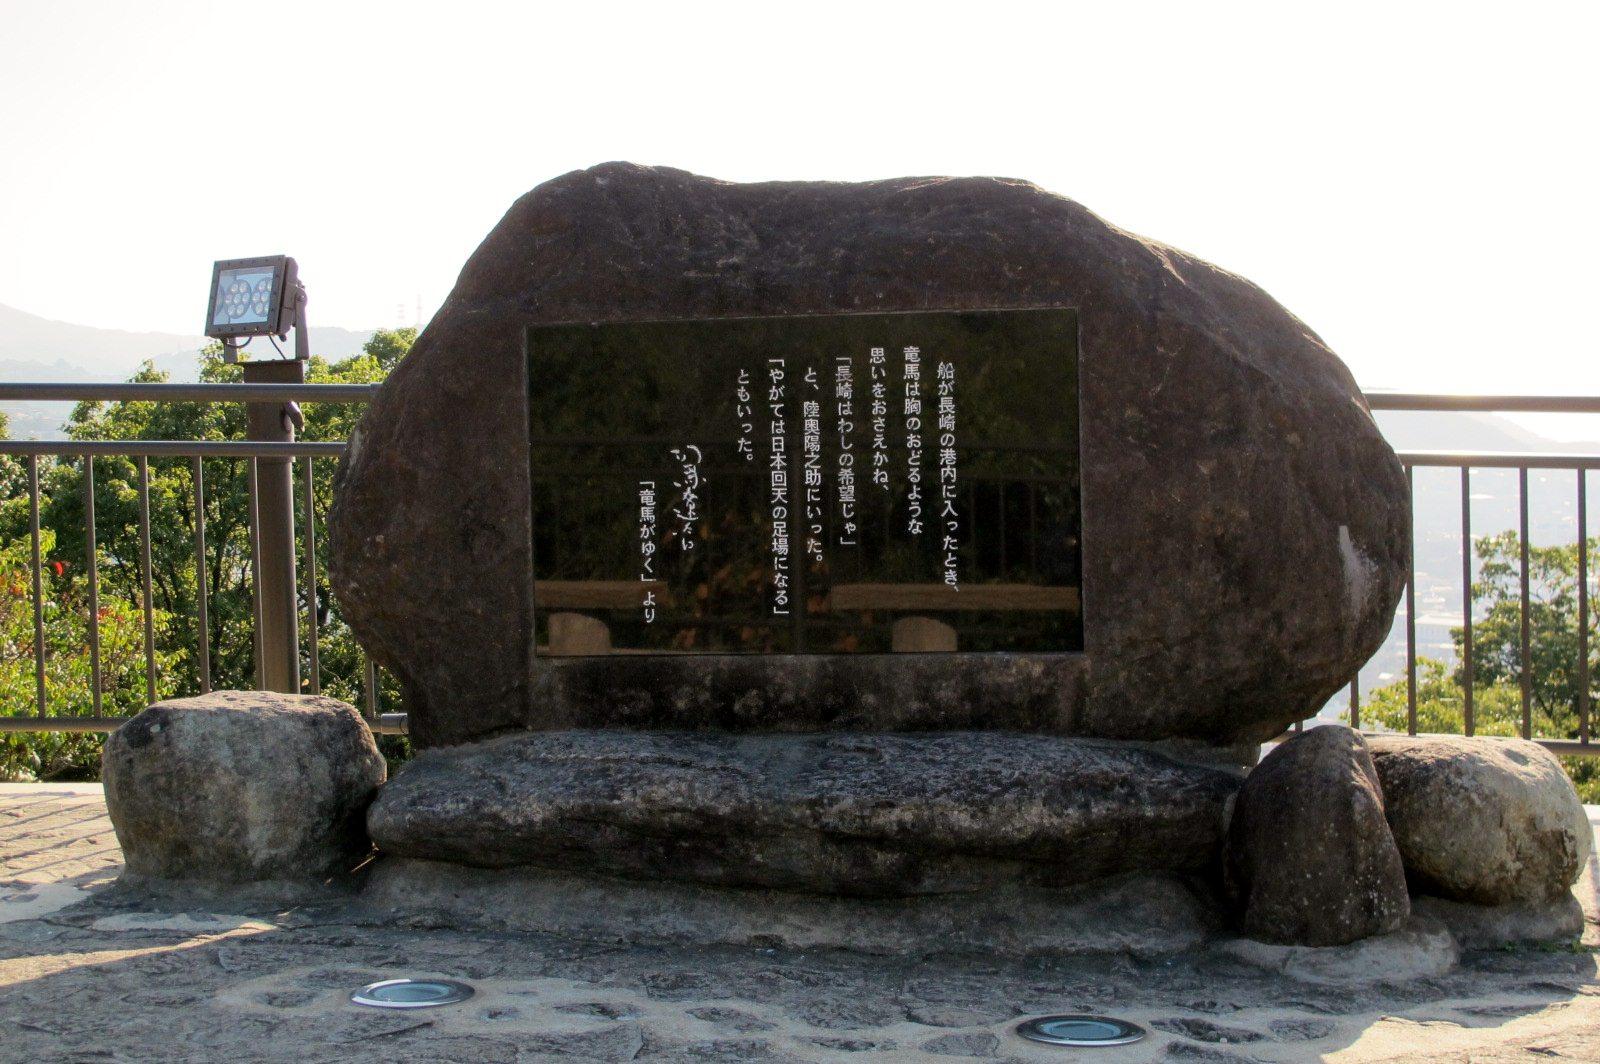 「長崎はわしの希望じゃ」と語った龍馬の言葉が刻まれた文学碑